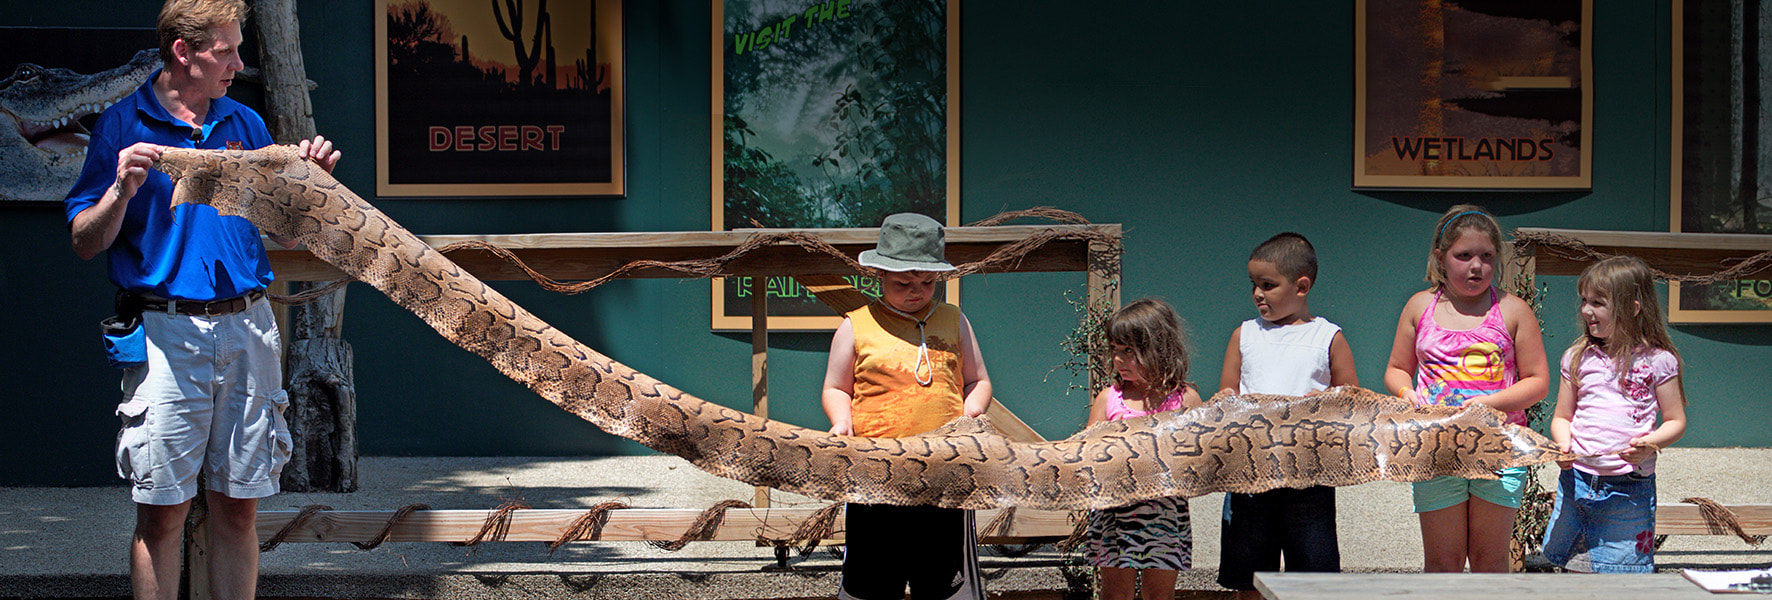 Children holding a long snake skin